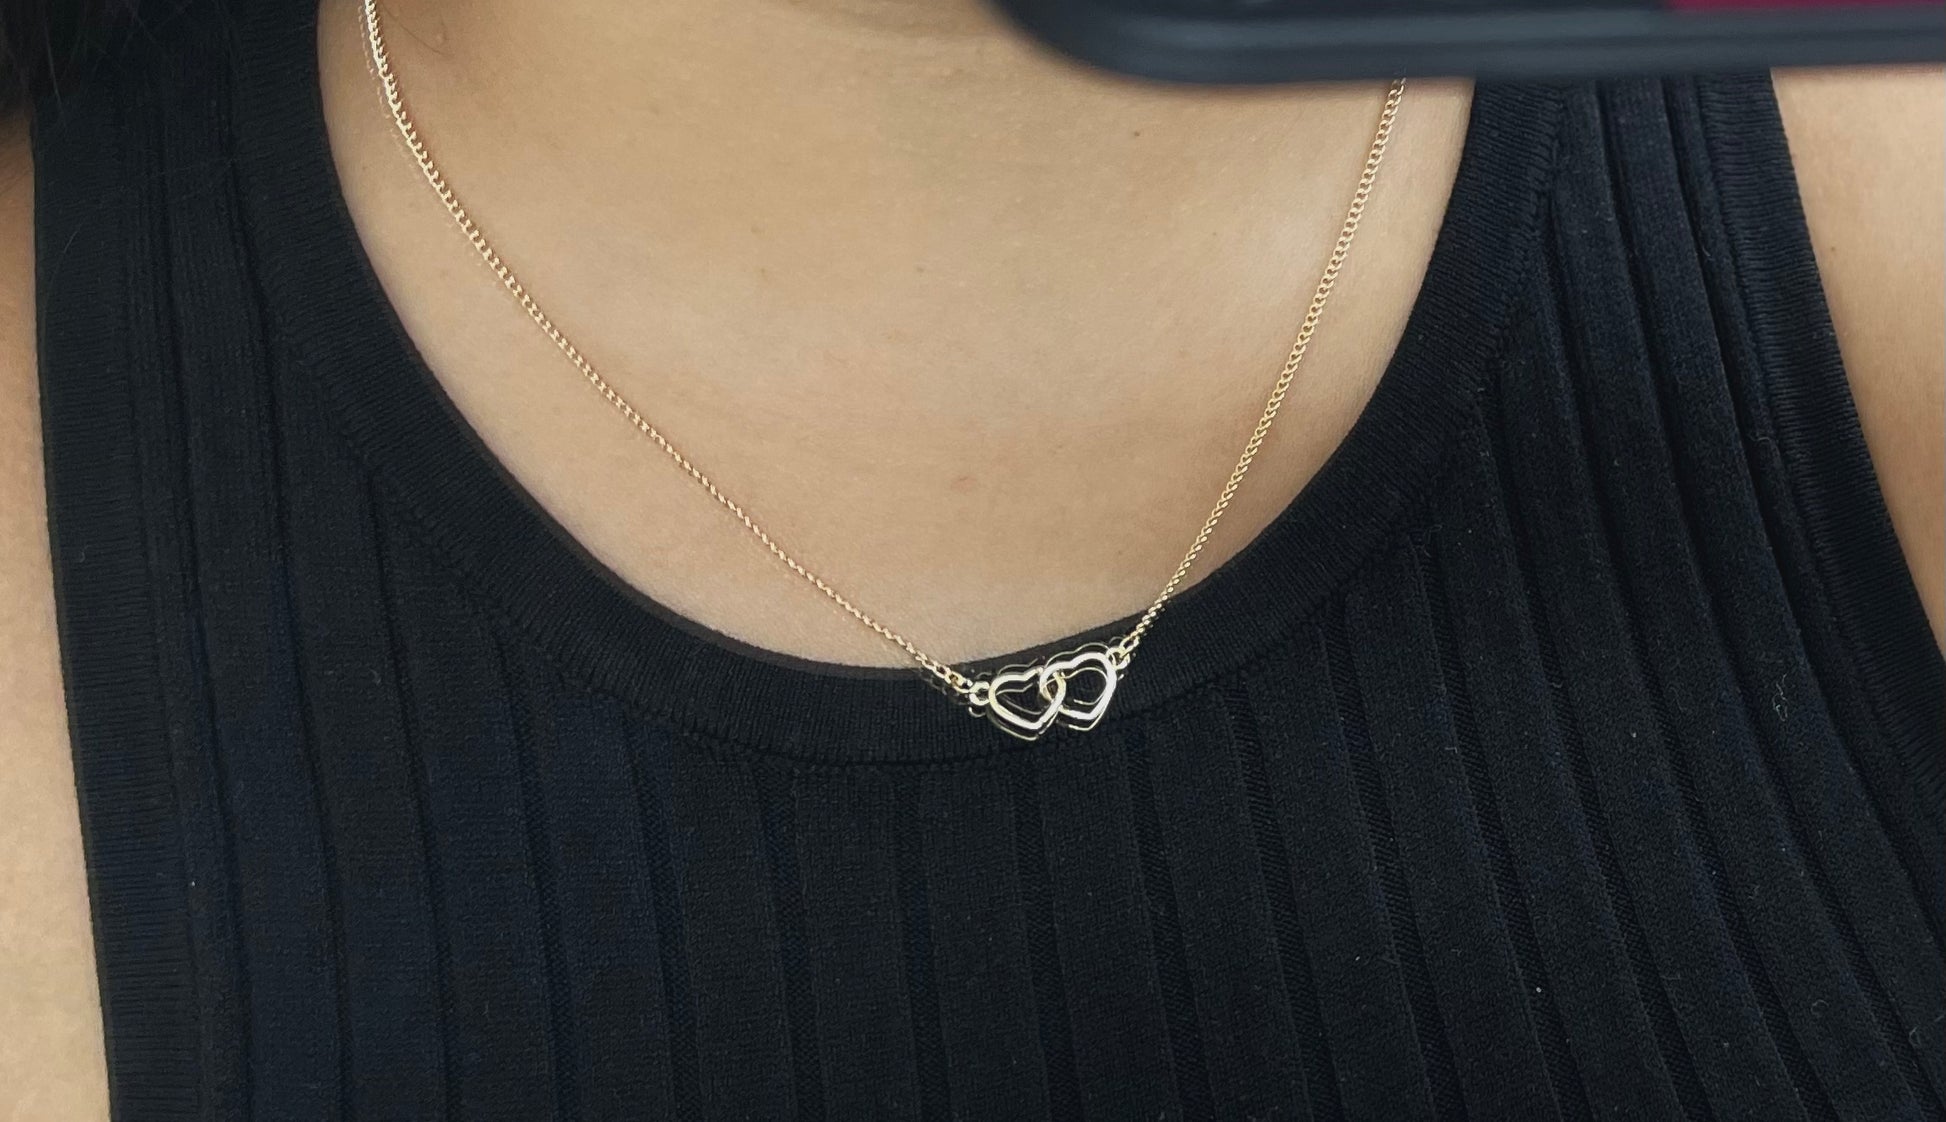 interlocked hearts necklace